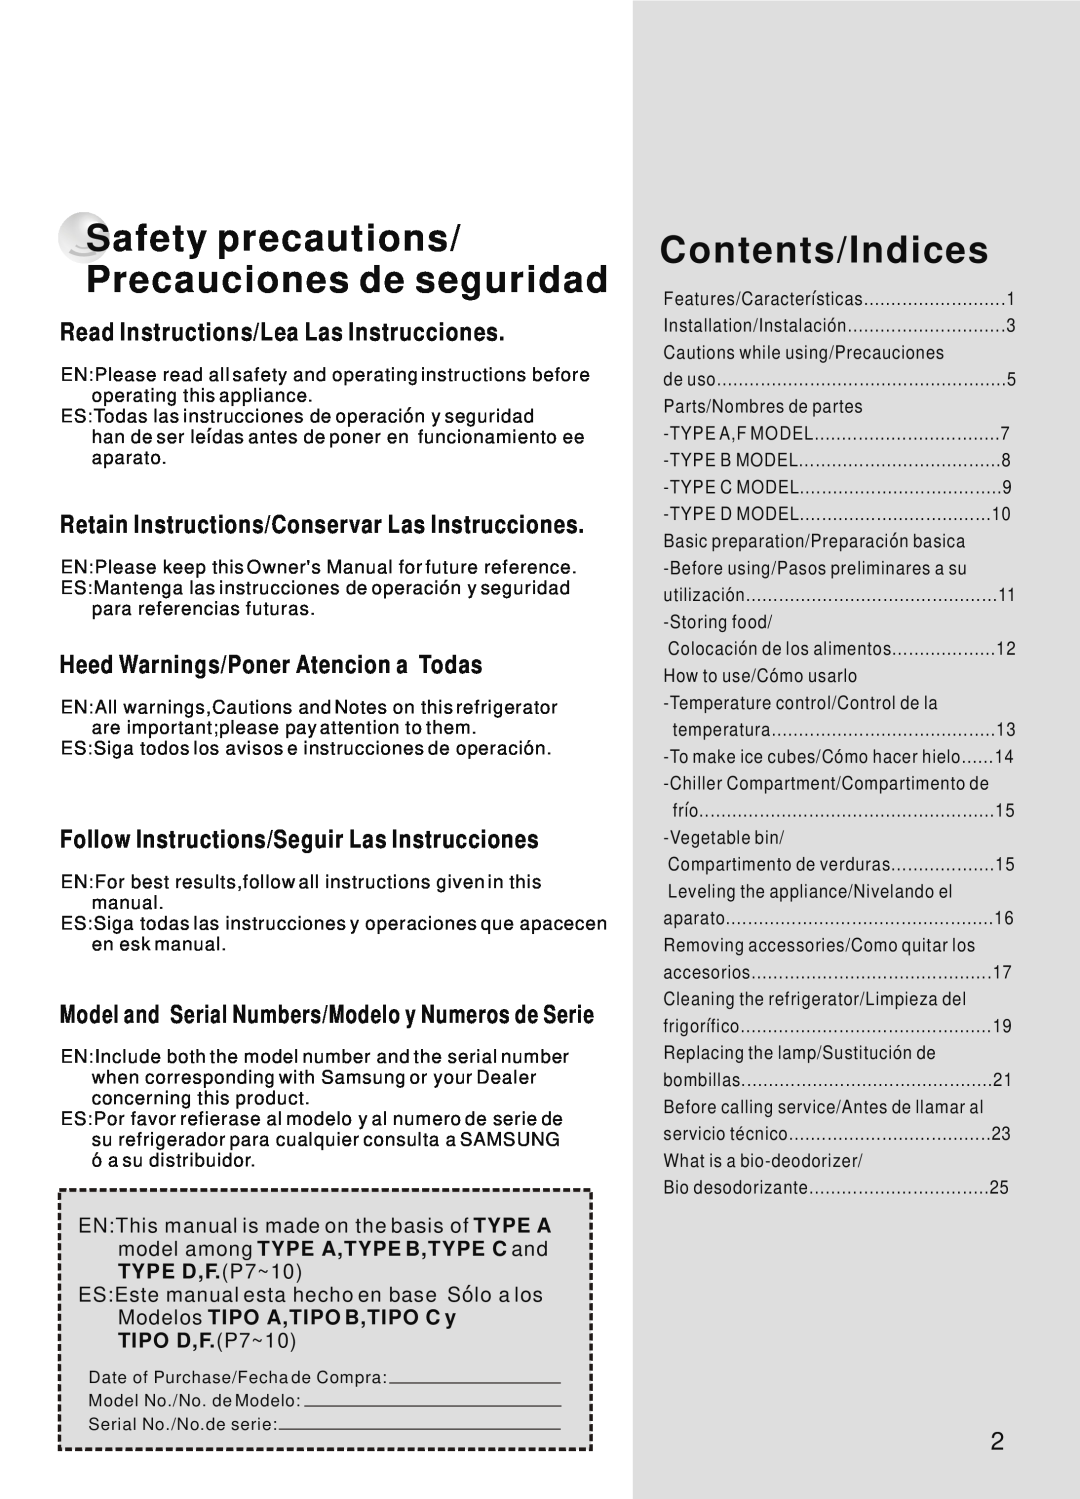 Samsung SR-38/39 Safety precautions/ Precauciones de seguridad, Contents/Indices, Read Instructions/Lea Las Instrucciones 